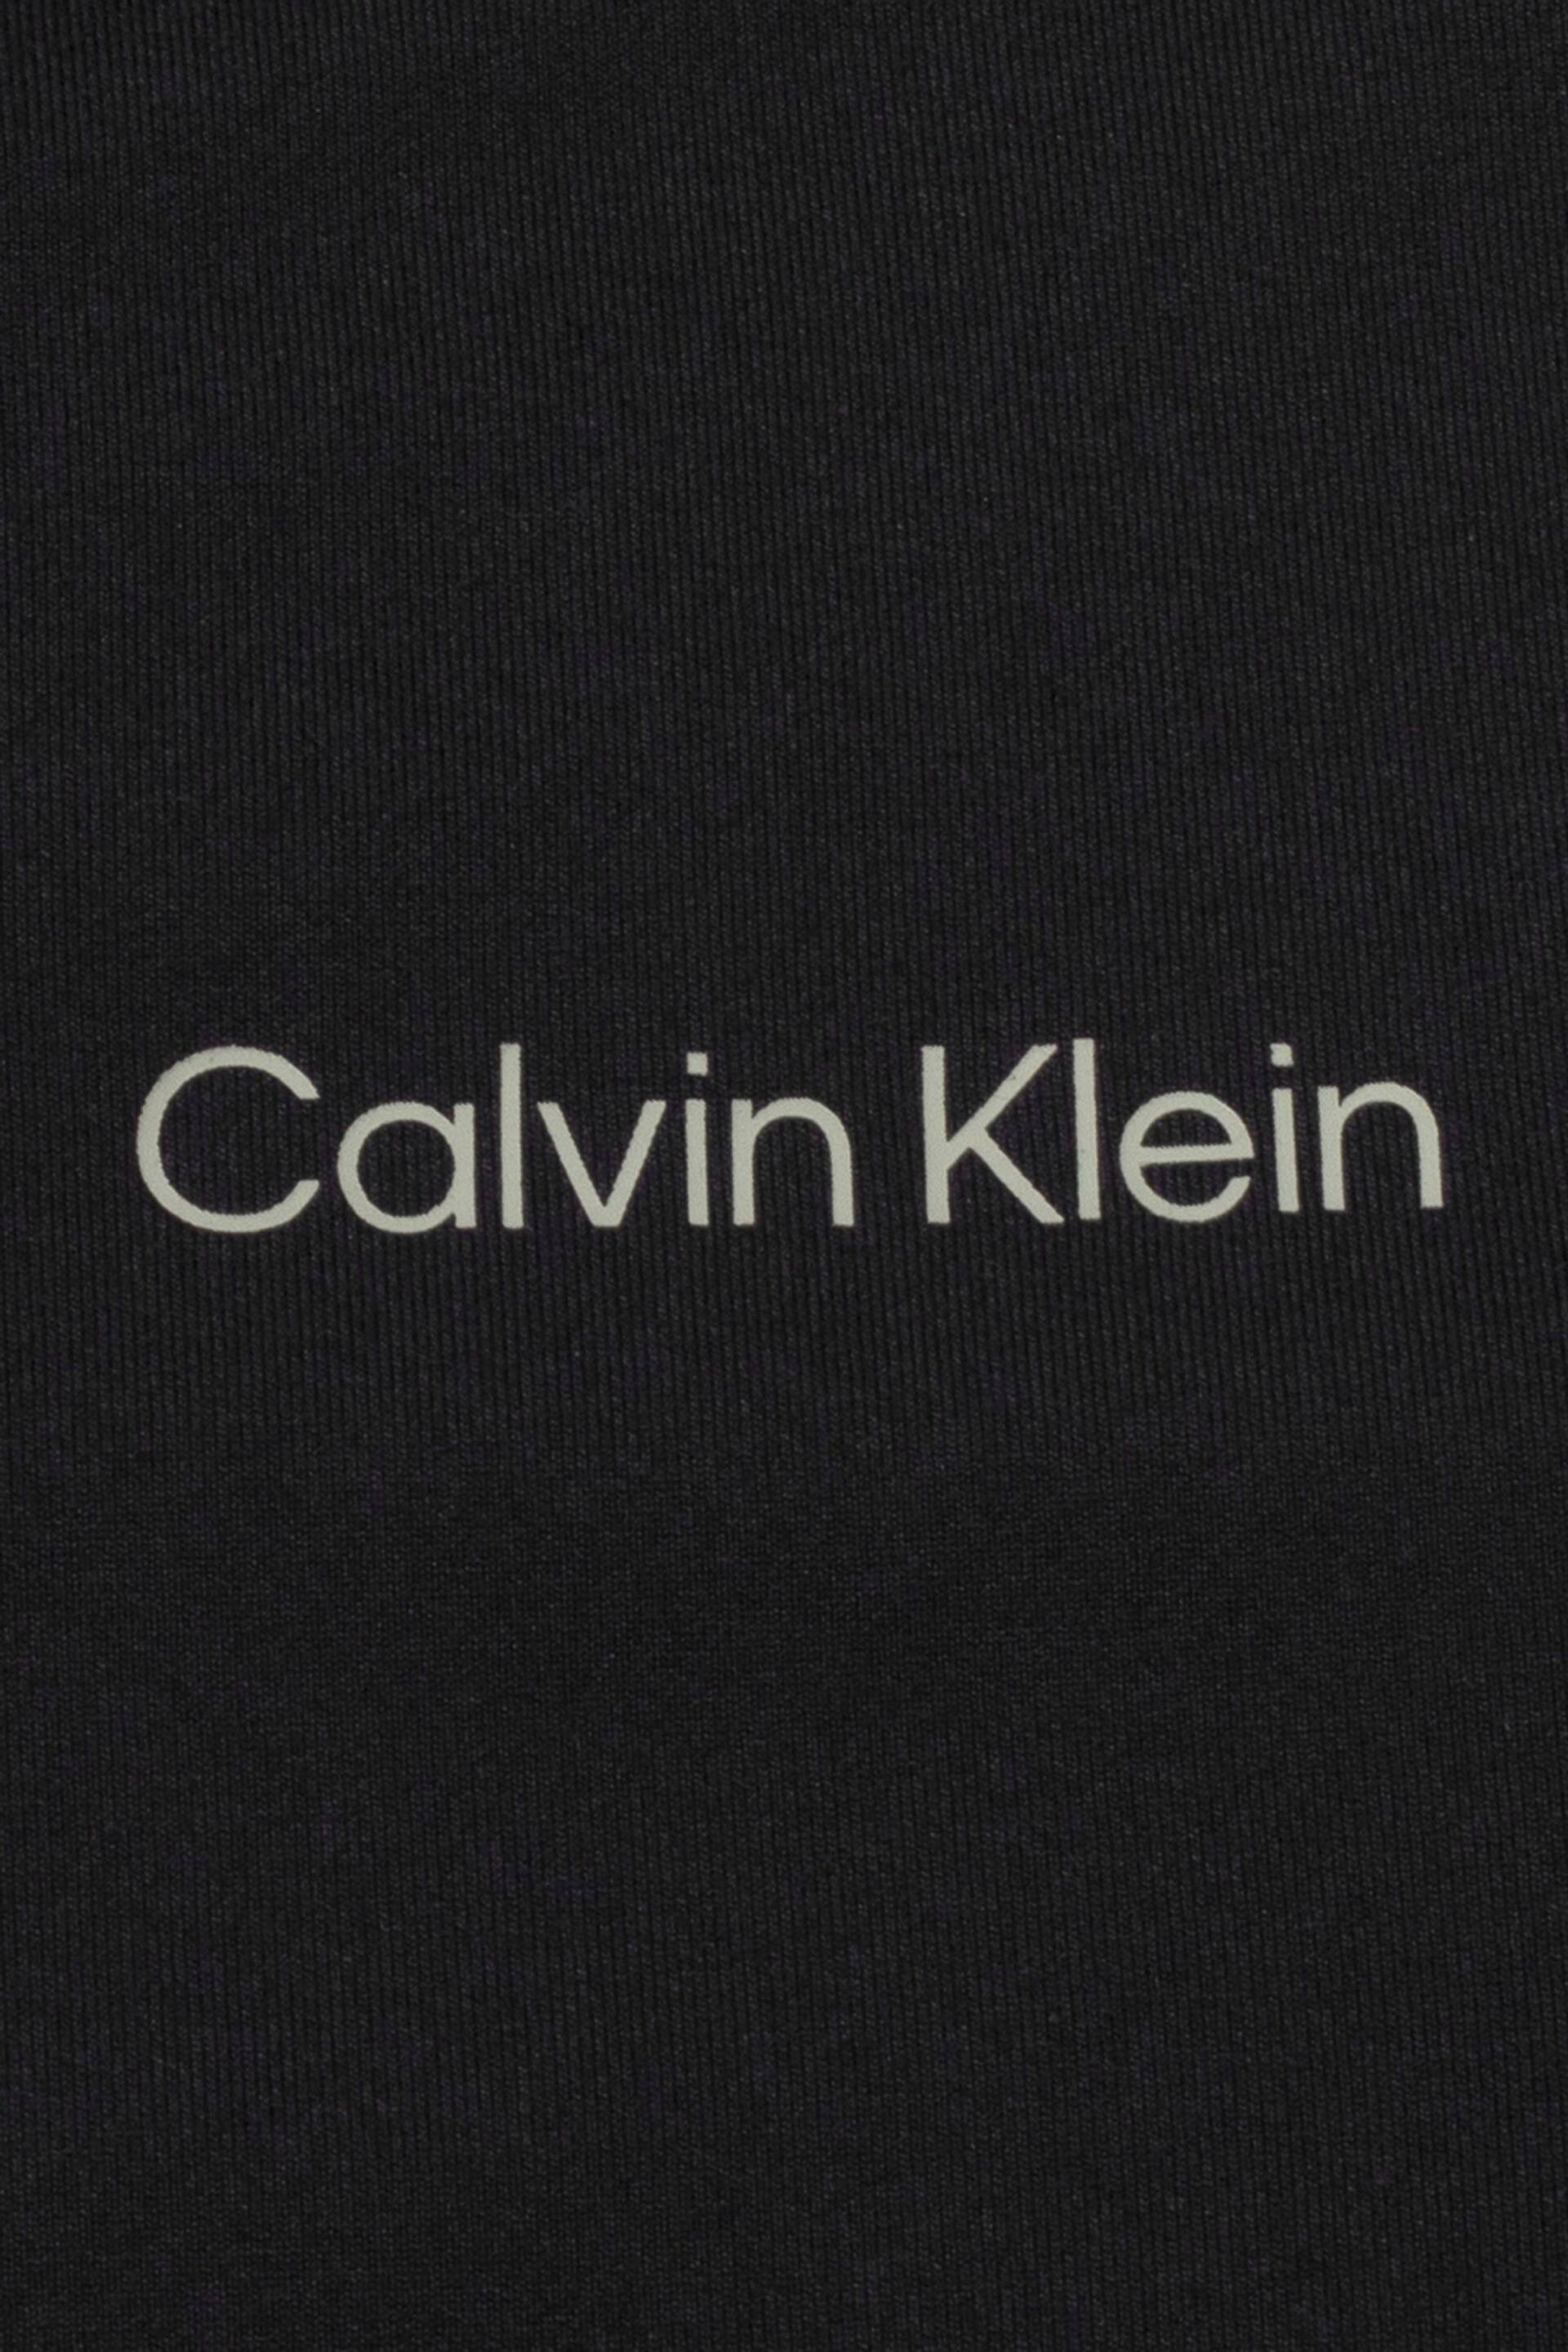 Calvin Klein Golf Newport T-Shirt - Image 9 of 9